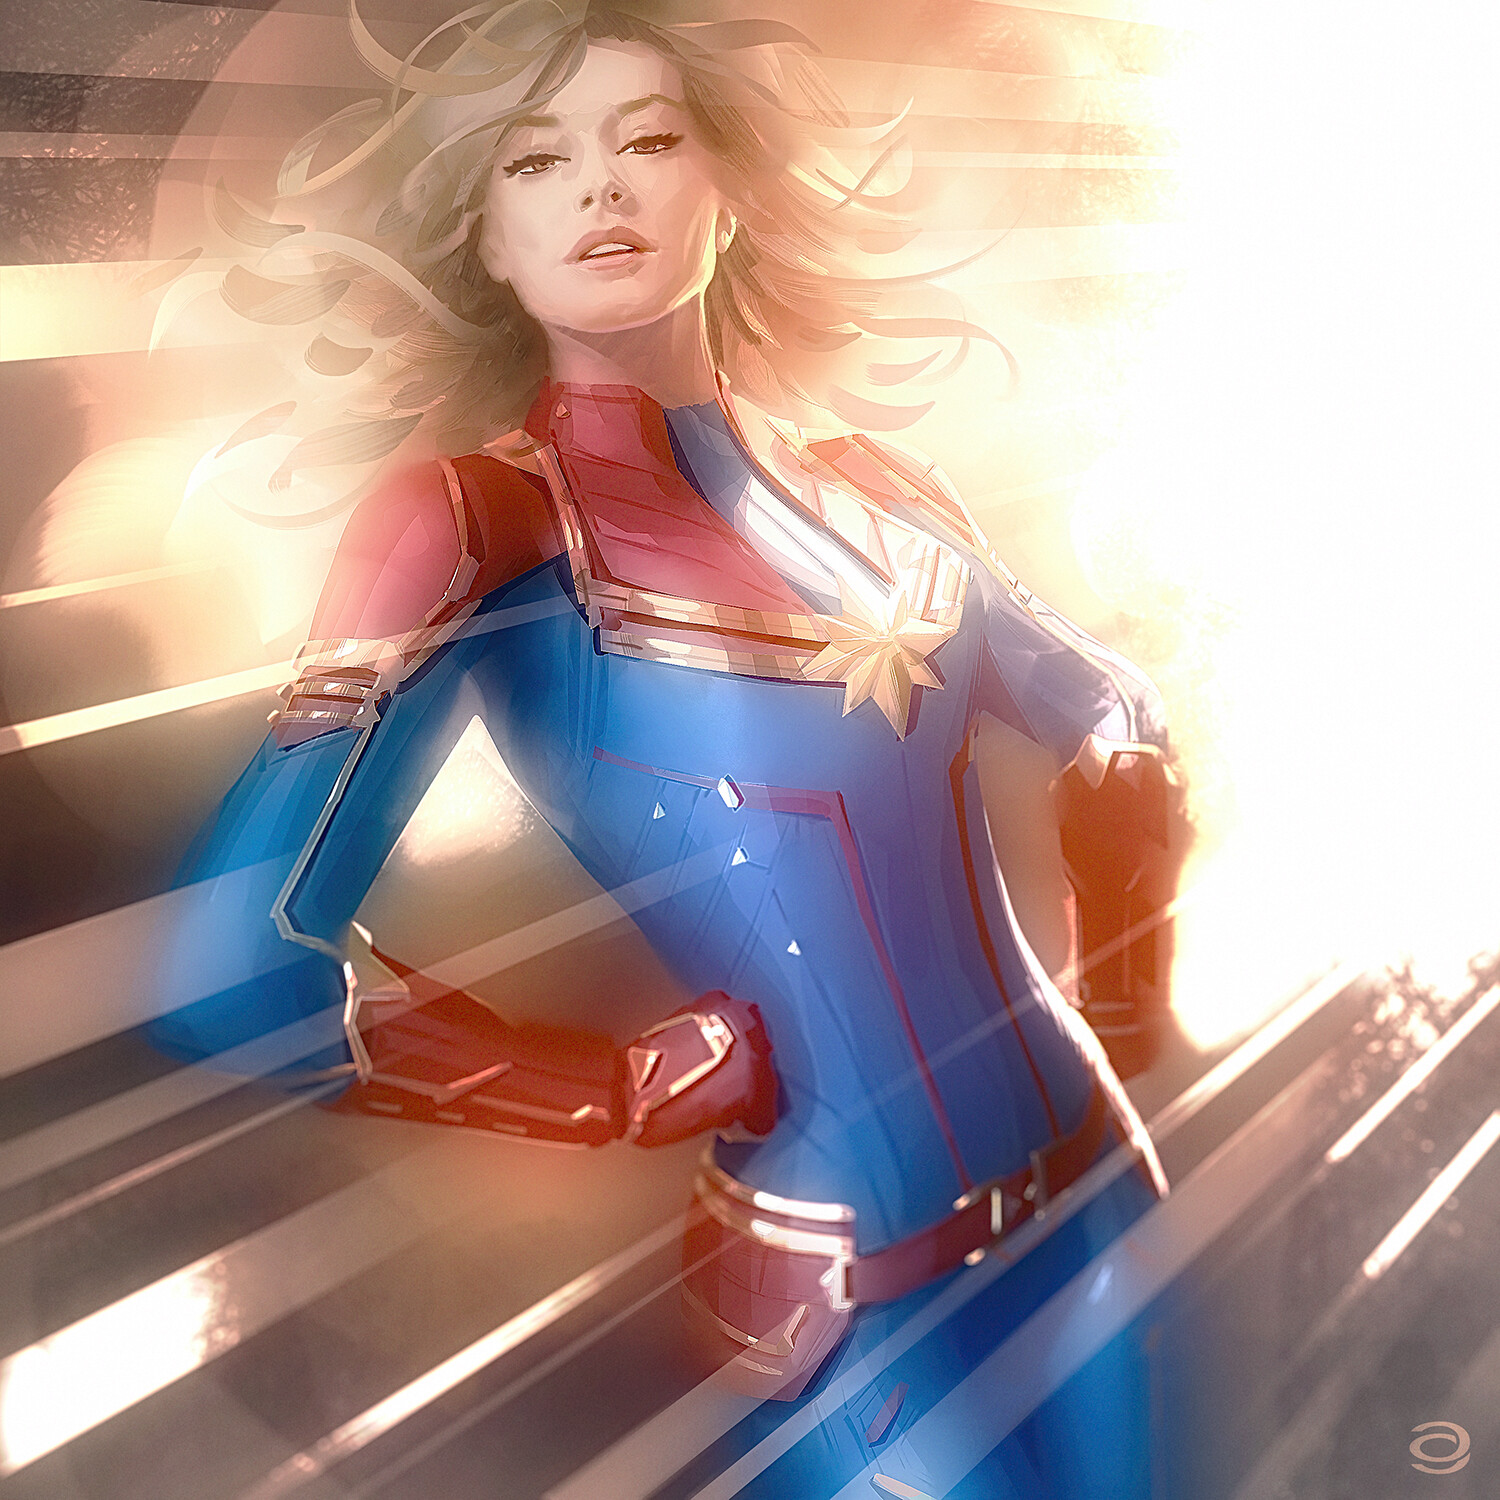 General 1500x1500 women artwork Captain Marvel fantasy girl superheroines Marvel Comics superhero